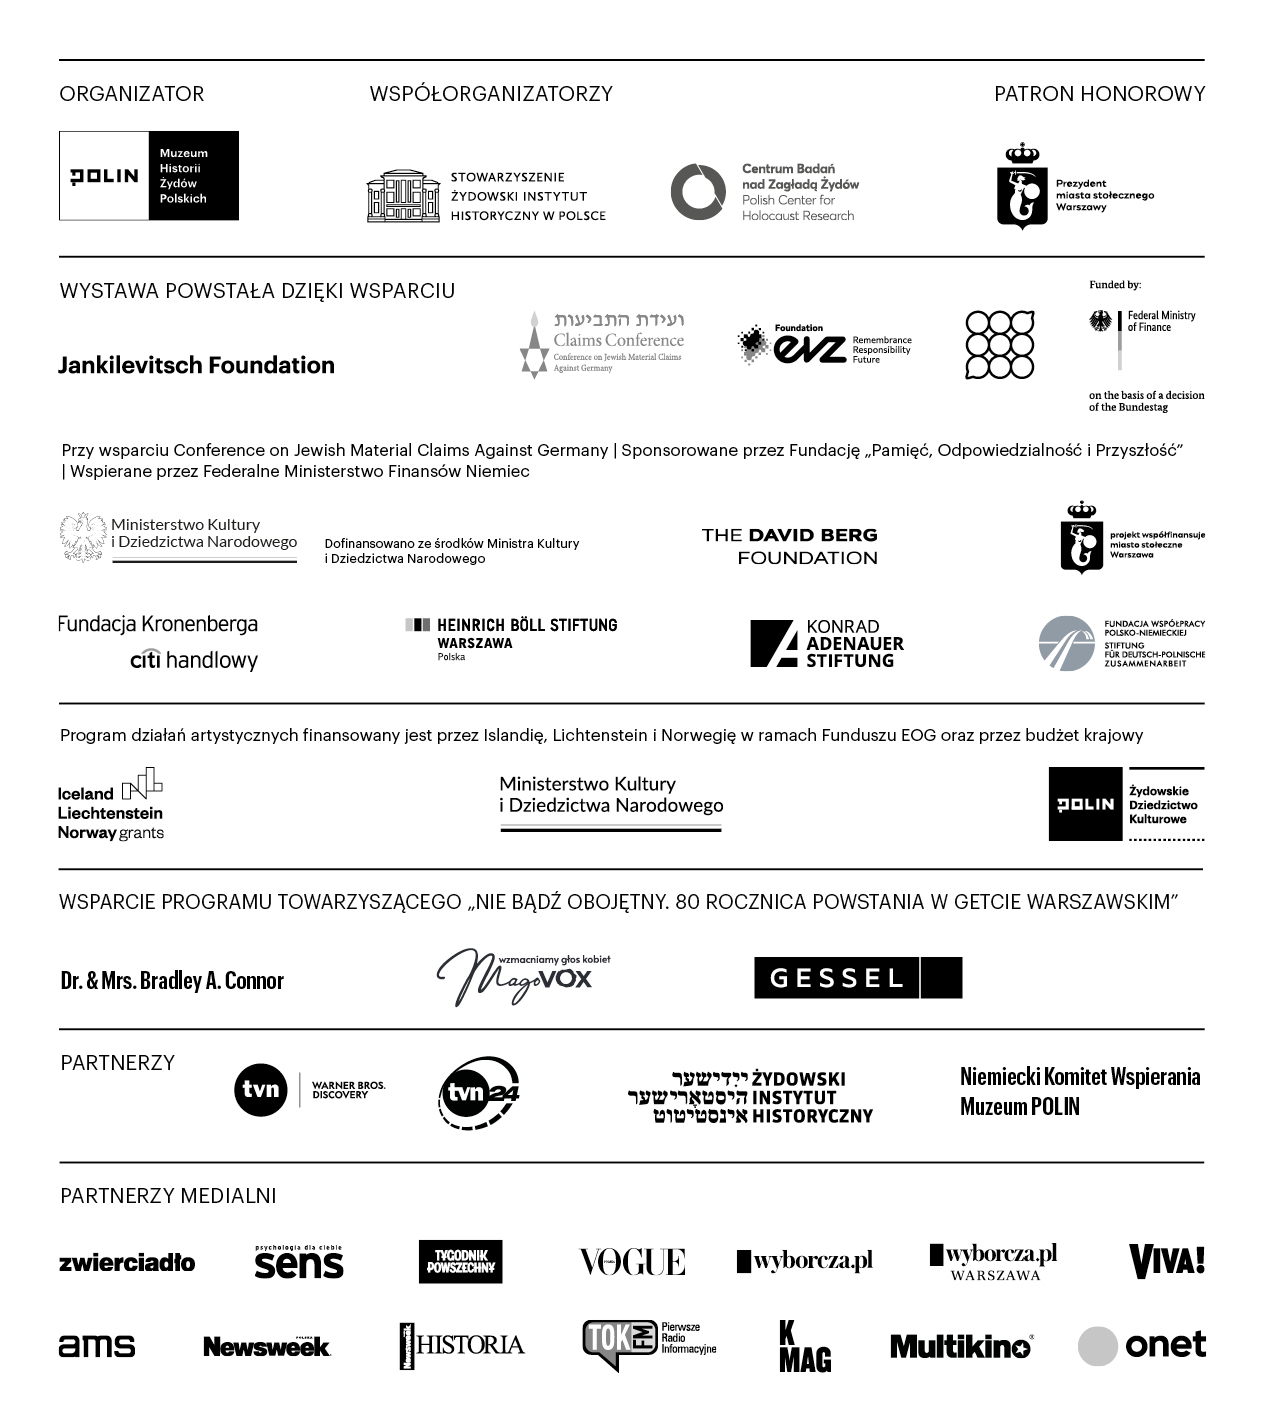 Logotypy organizatorów i partnerów wystawy "Wokół nas morze ognia"